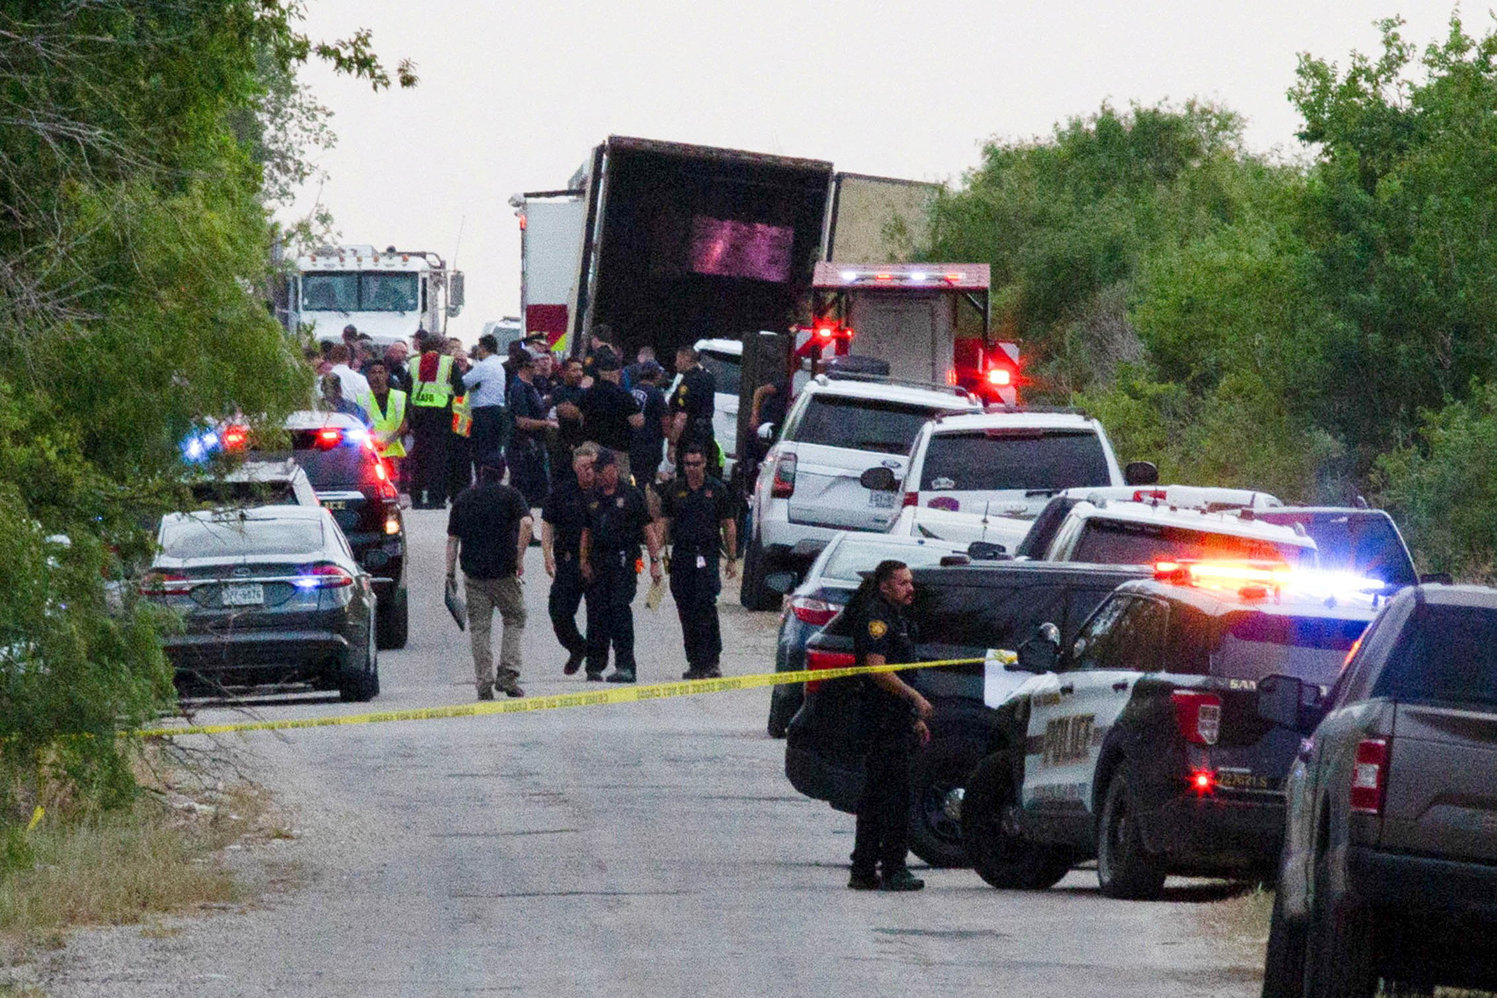 VIAJE MORTAL—Oficiales de la ley en San Antonio trabajan en una escena el 27 de junio, donde personas fueron encontradas muertas dentro de un camión de remolque.